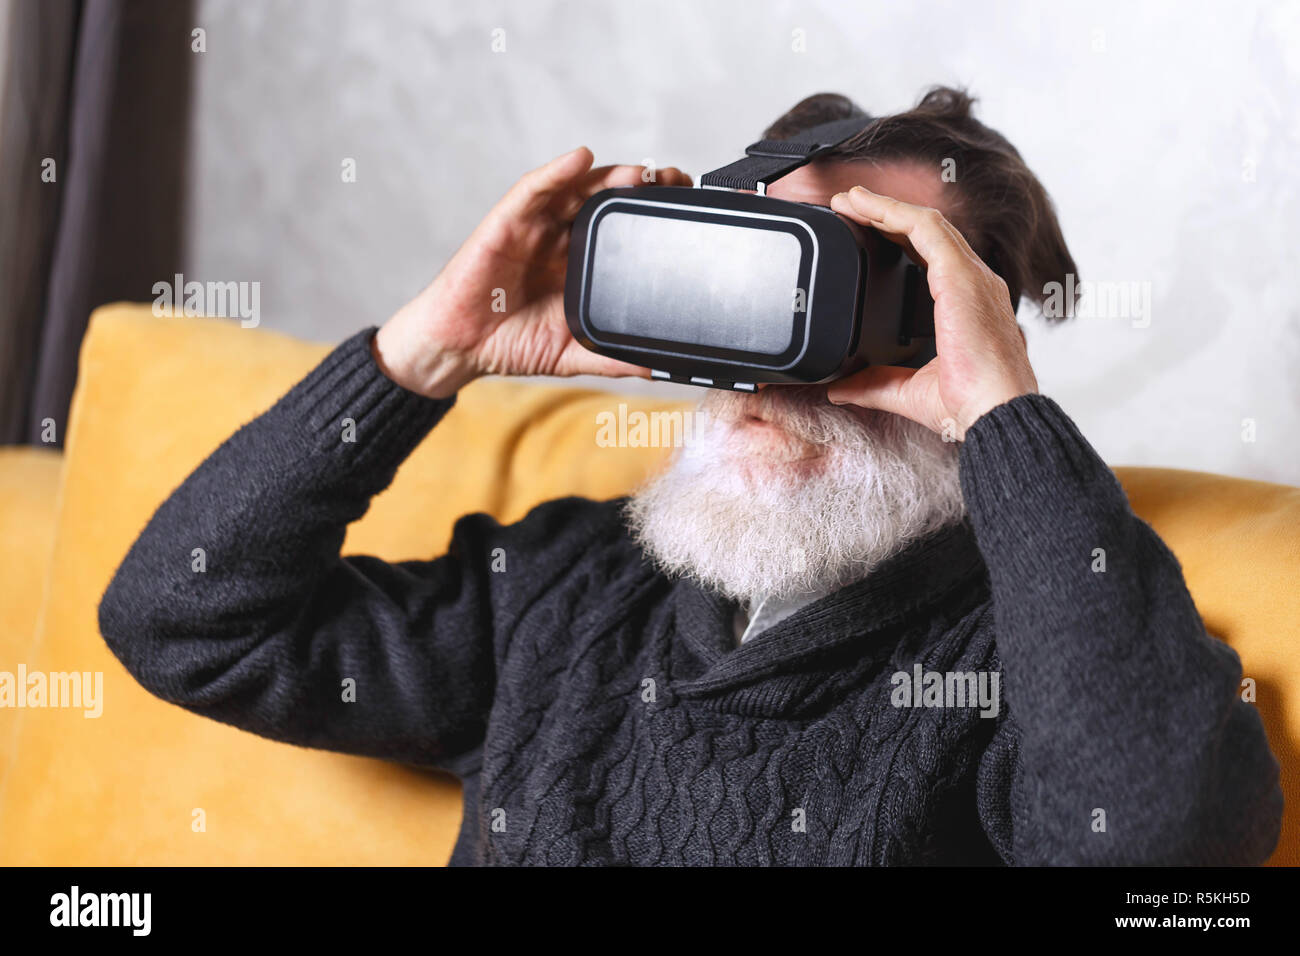 Zeitgenössische älterer bärtiger Mann im grauen pullover Tragen einer Virtual reality Headset beim Sitzen auf dem gelben Sofa im Wohnzimmer, zukünftige Technologie Konzept Stockfoto